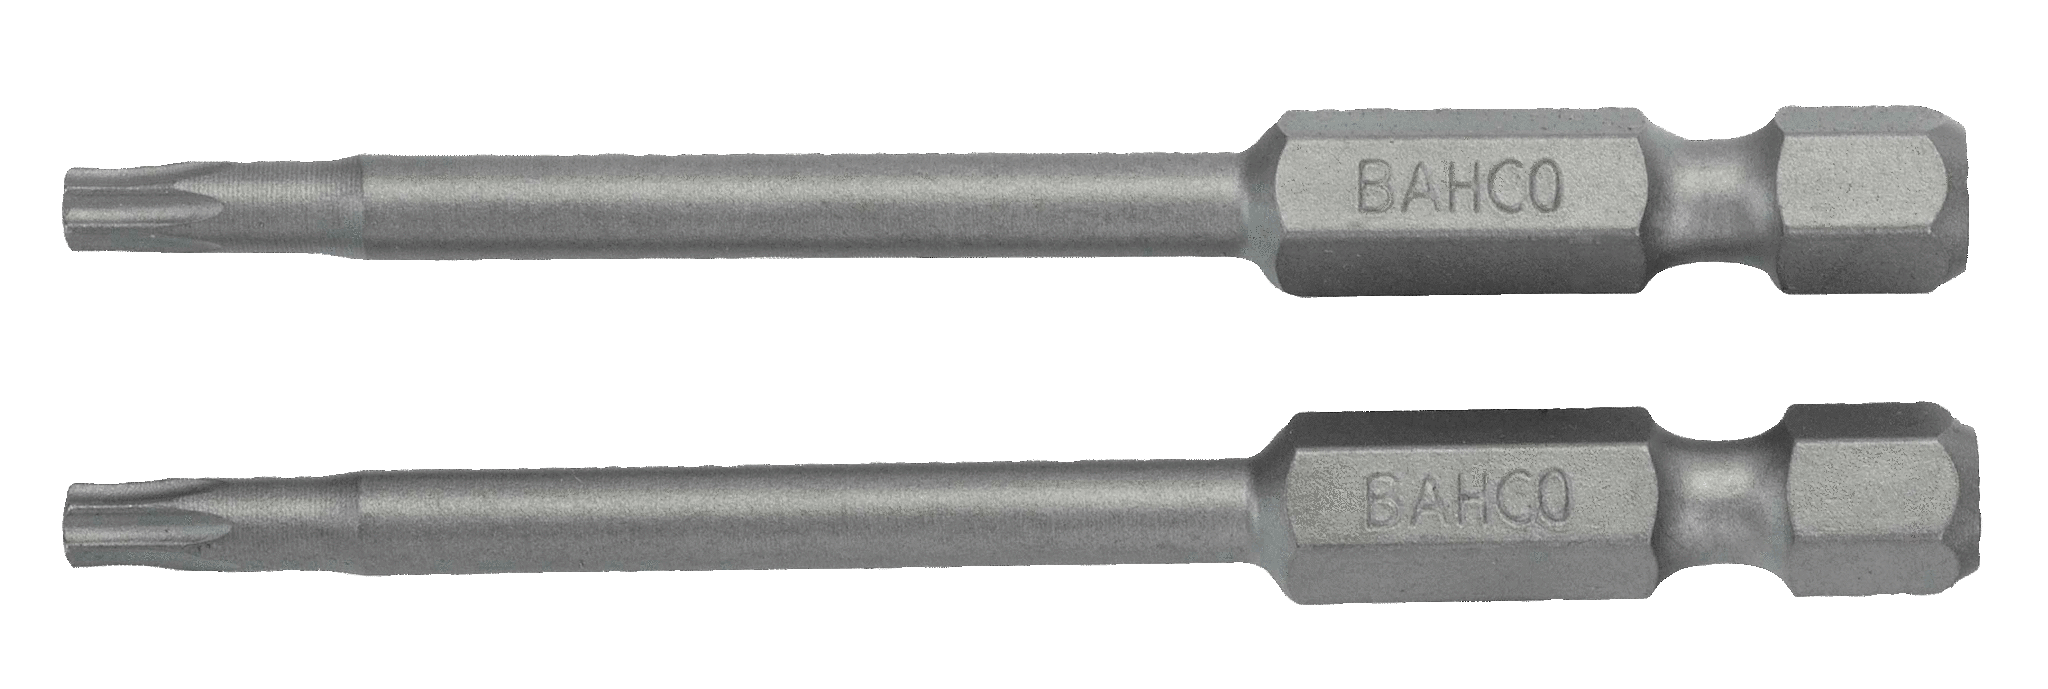 картинка Стандартные биты для отверток Torx® TR, 70 мм BAHCO 59S/70TR27-2P от магазина "Элит-инструмент"